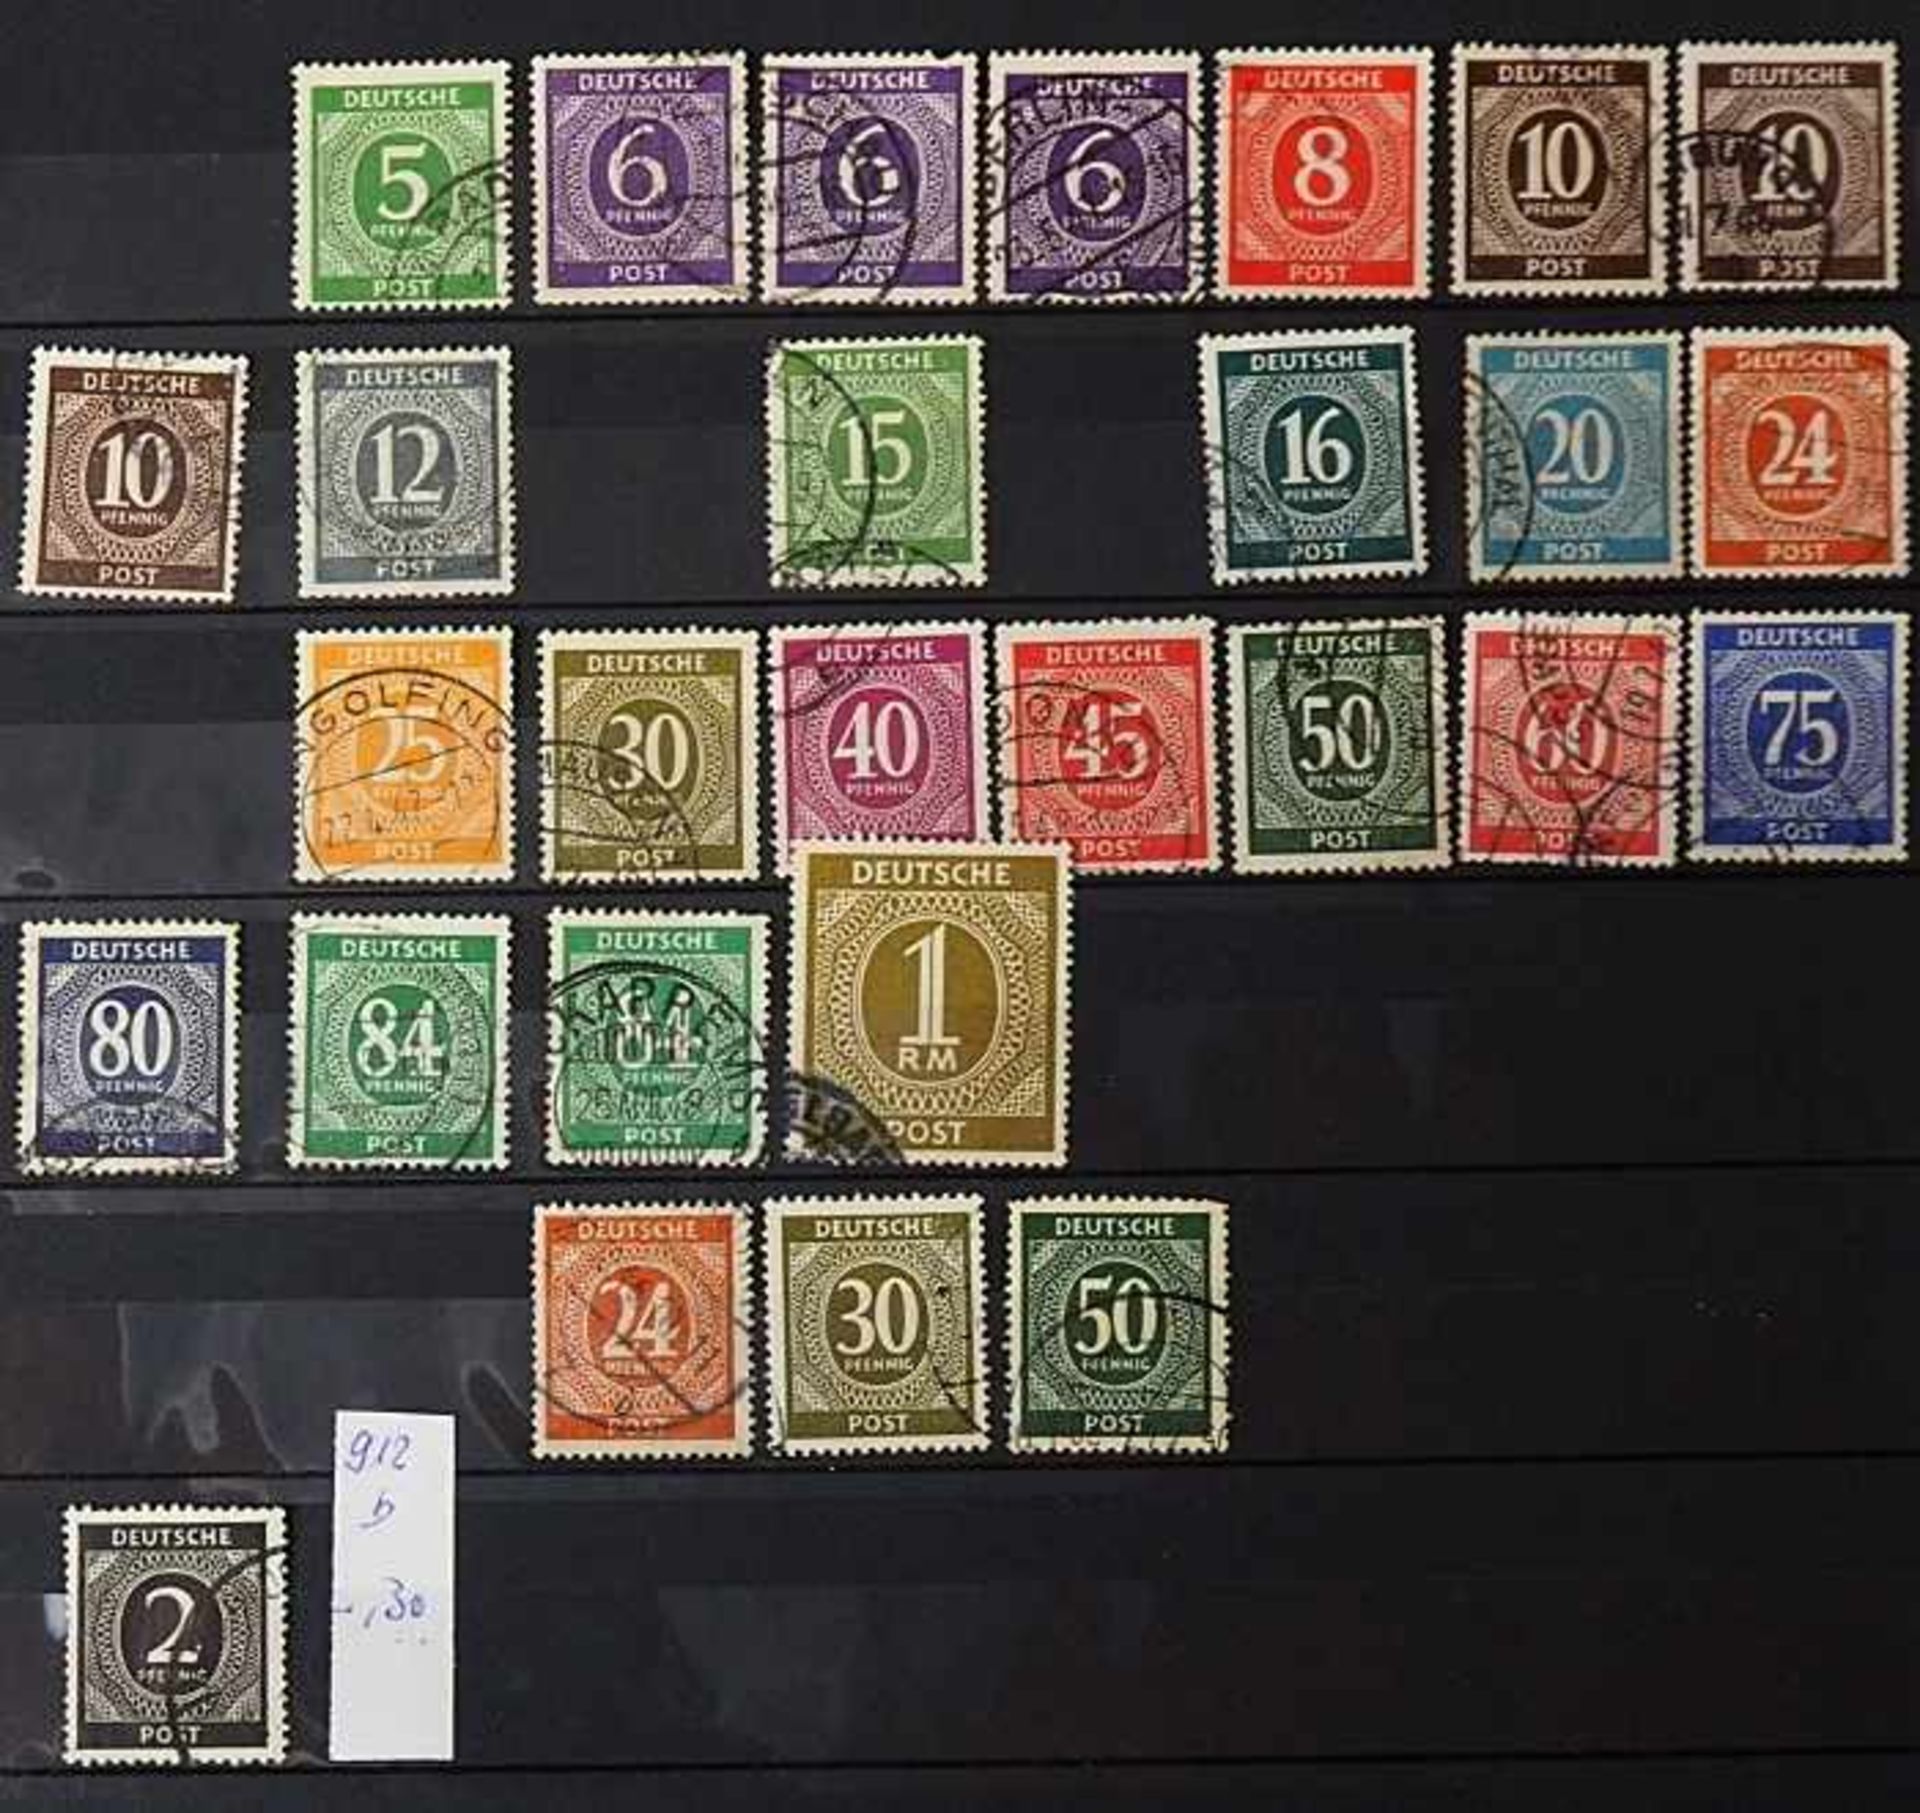 Sammlung Briefmarken, Ersttagsbriefe, Briefe, Fehldrucke u.a., gestempelt/ungestempelt,Bayern, - Bild 3 aus 5